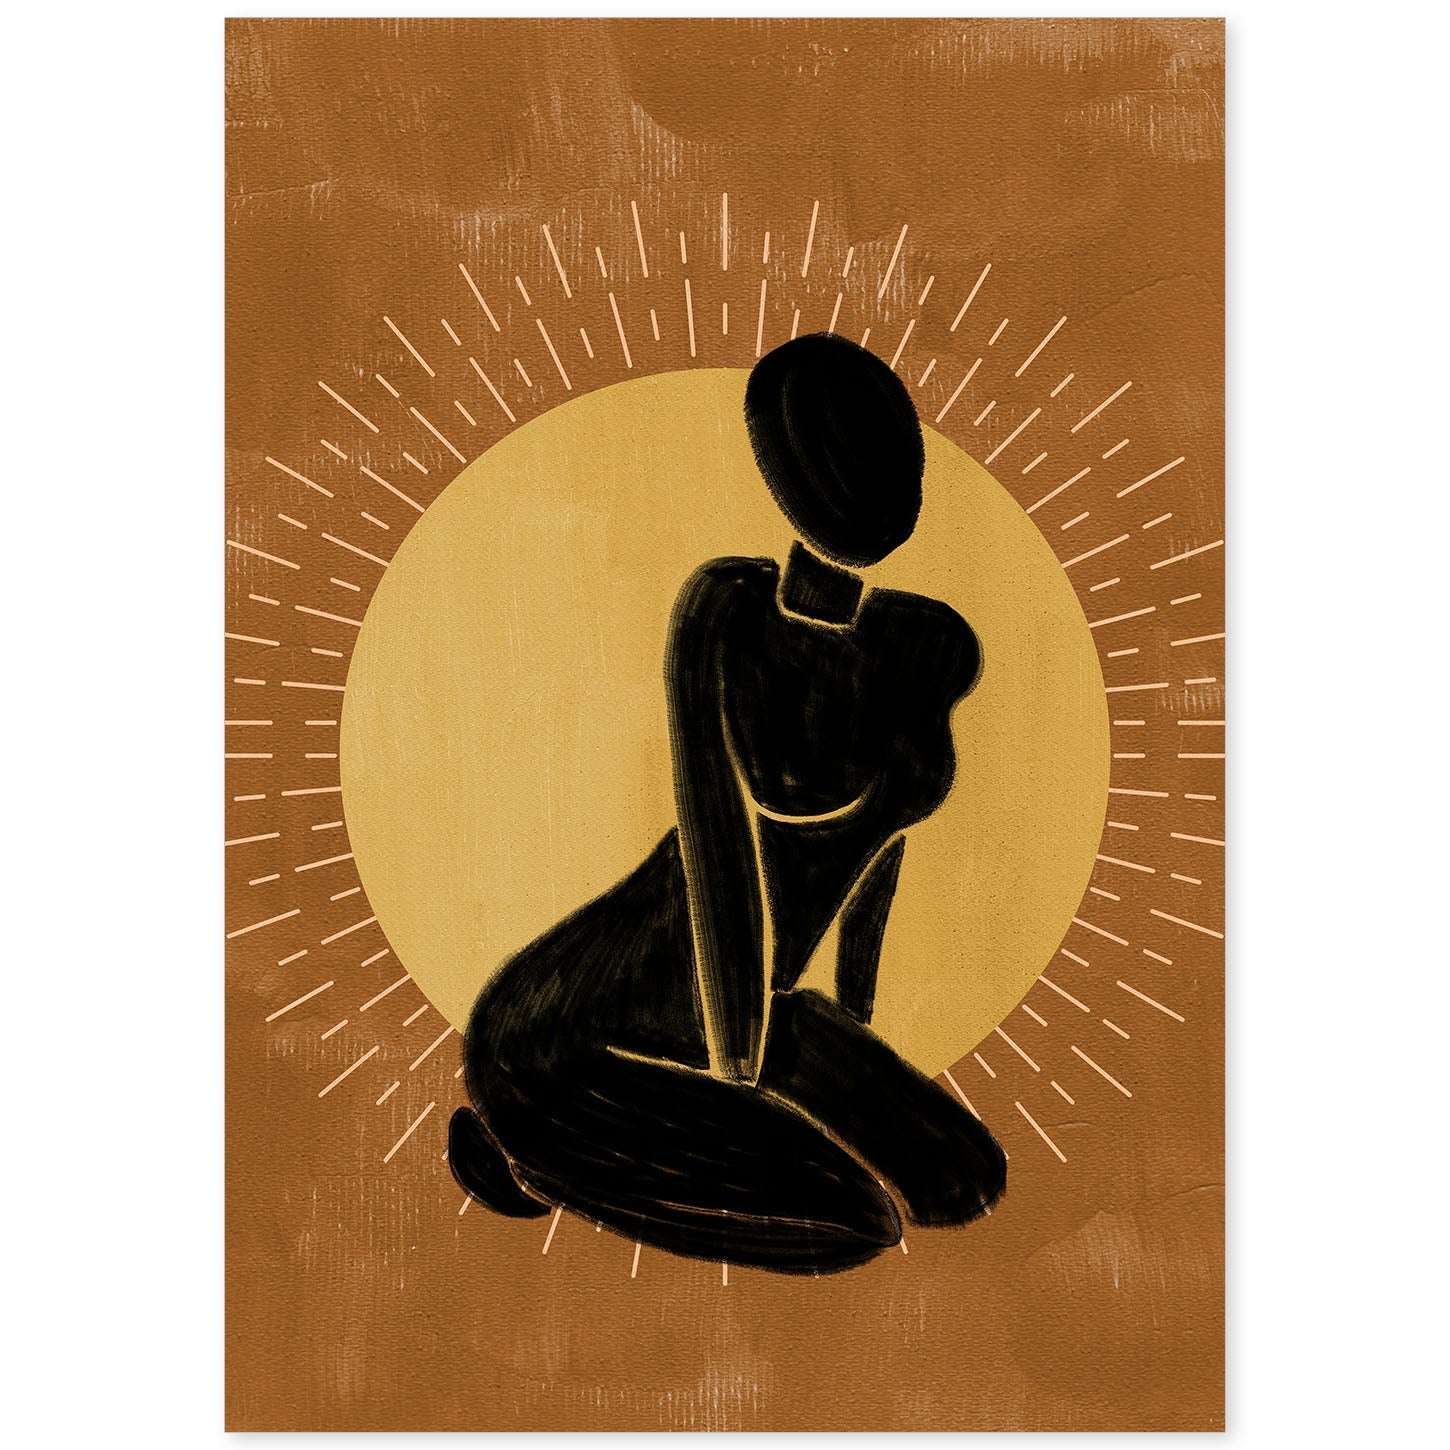 Poster con ilustracion de mujer. Dibujos con formas, caras, cuerpos y gestos de mujeres. 'Mujeres 3'.-Artwork-Nacnic-A4-Sin marco-Nacnic Estudio SL